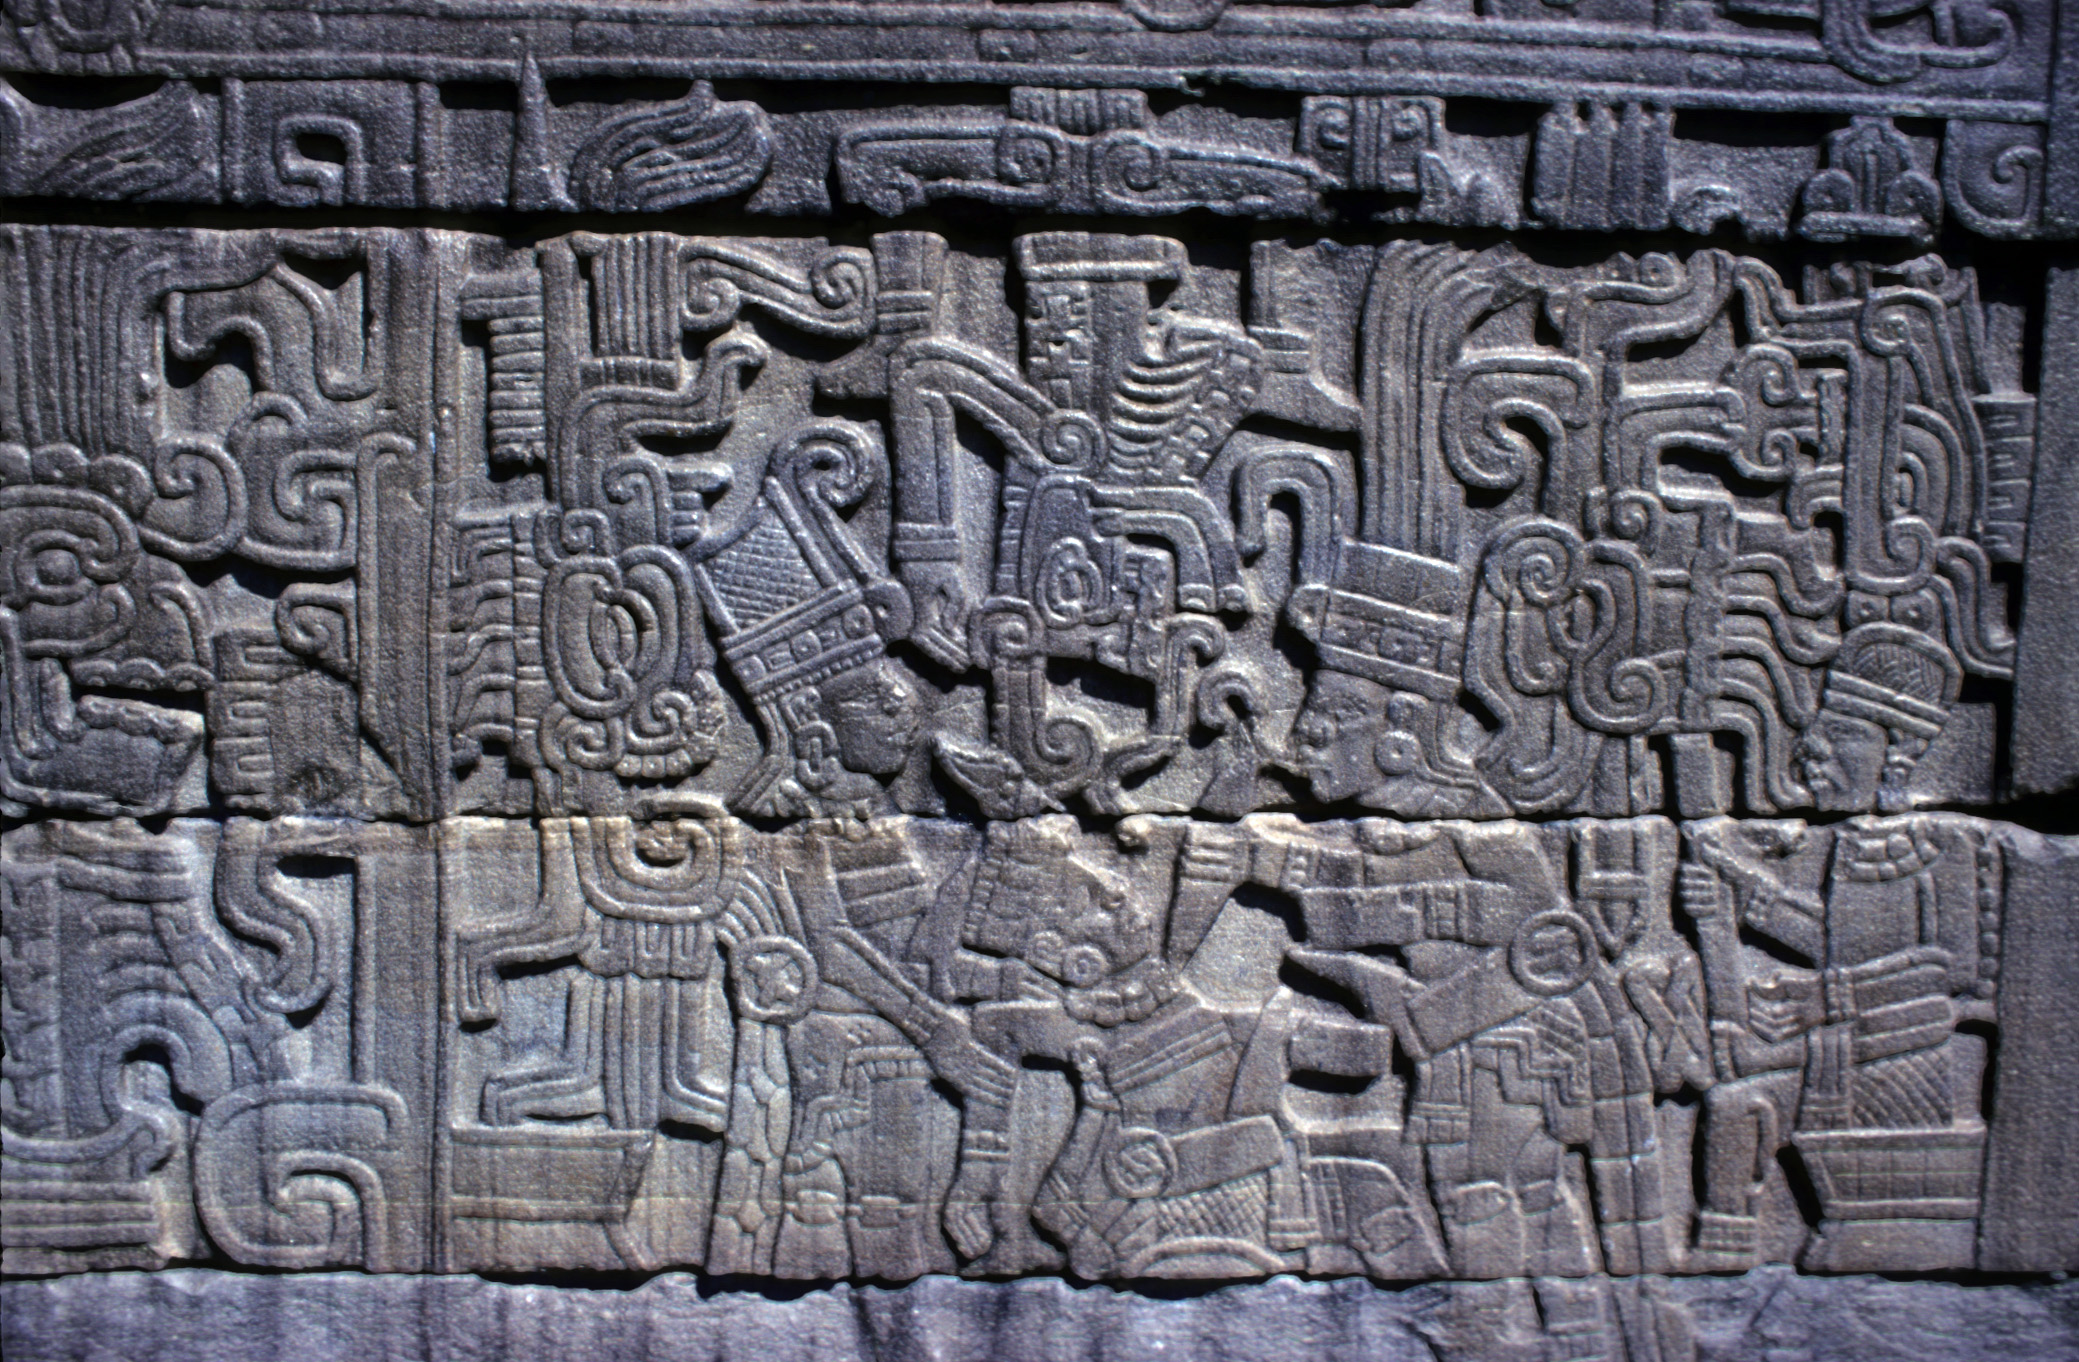 El Tajín: Top Oyunu Bilinmeyen by Bilinmeyen Sanatçı - ca. 600 CE 